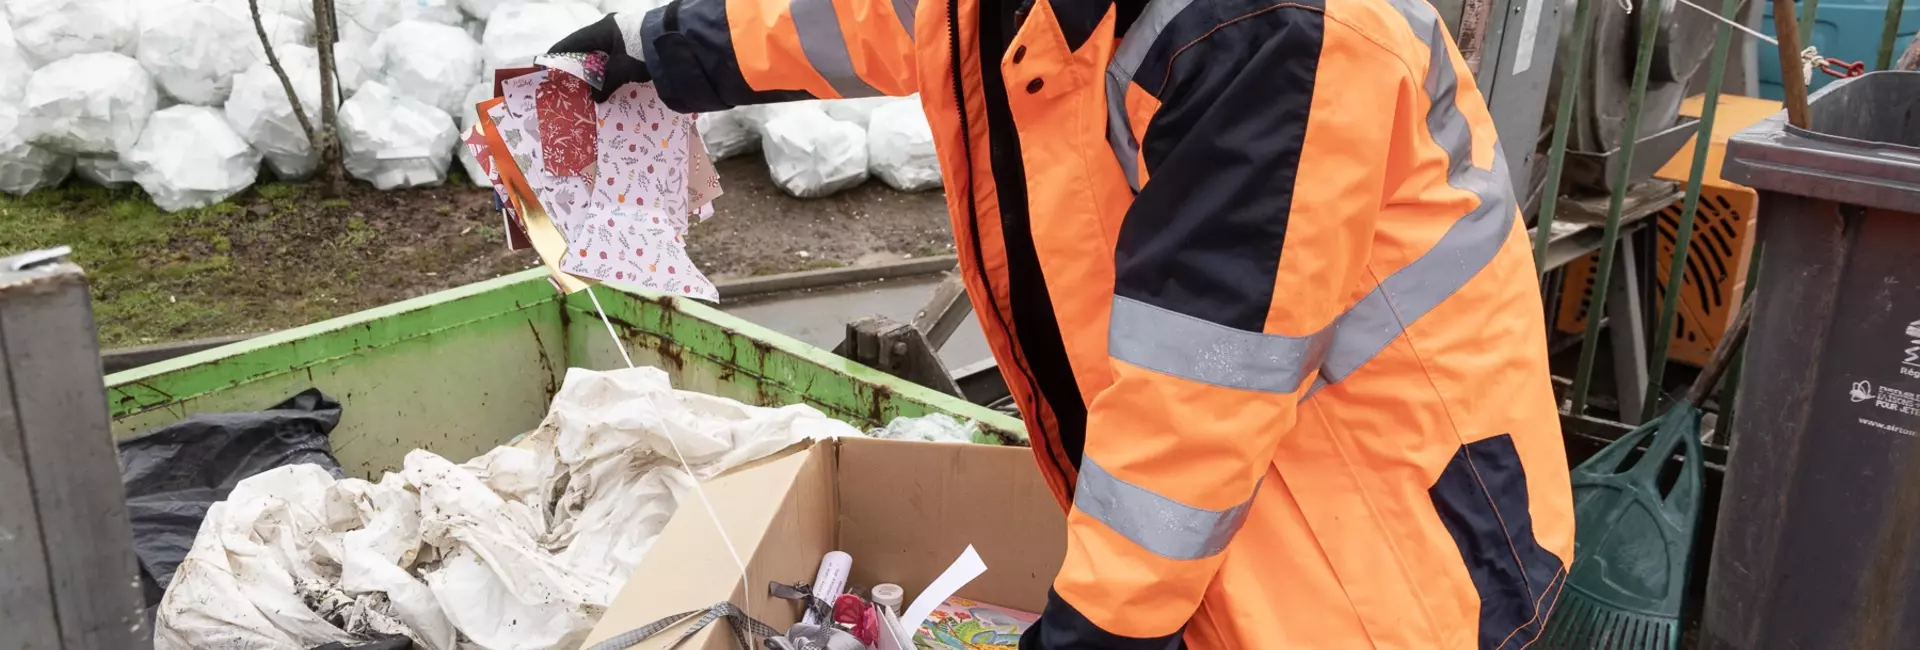 Collecte, tri, traitement de déchets en secteur Corrèze